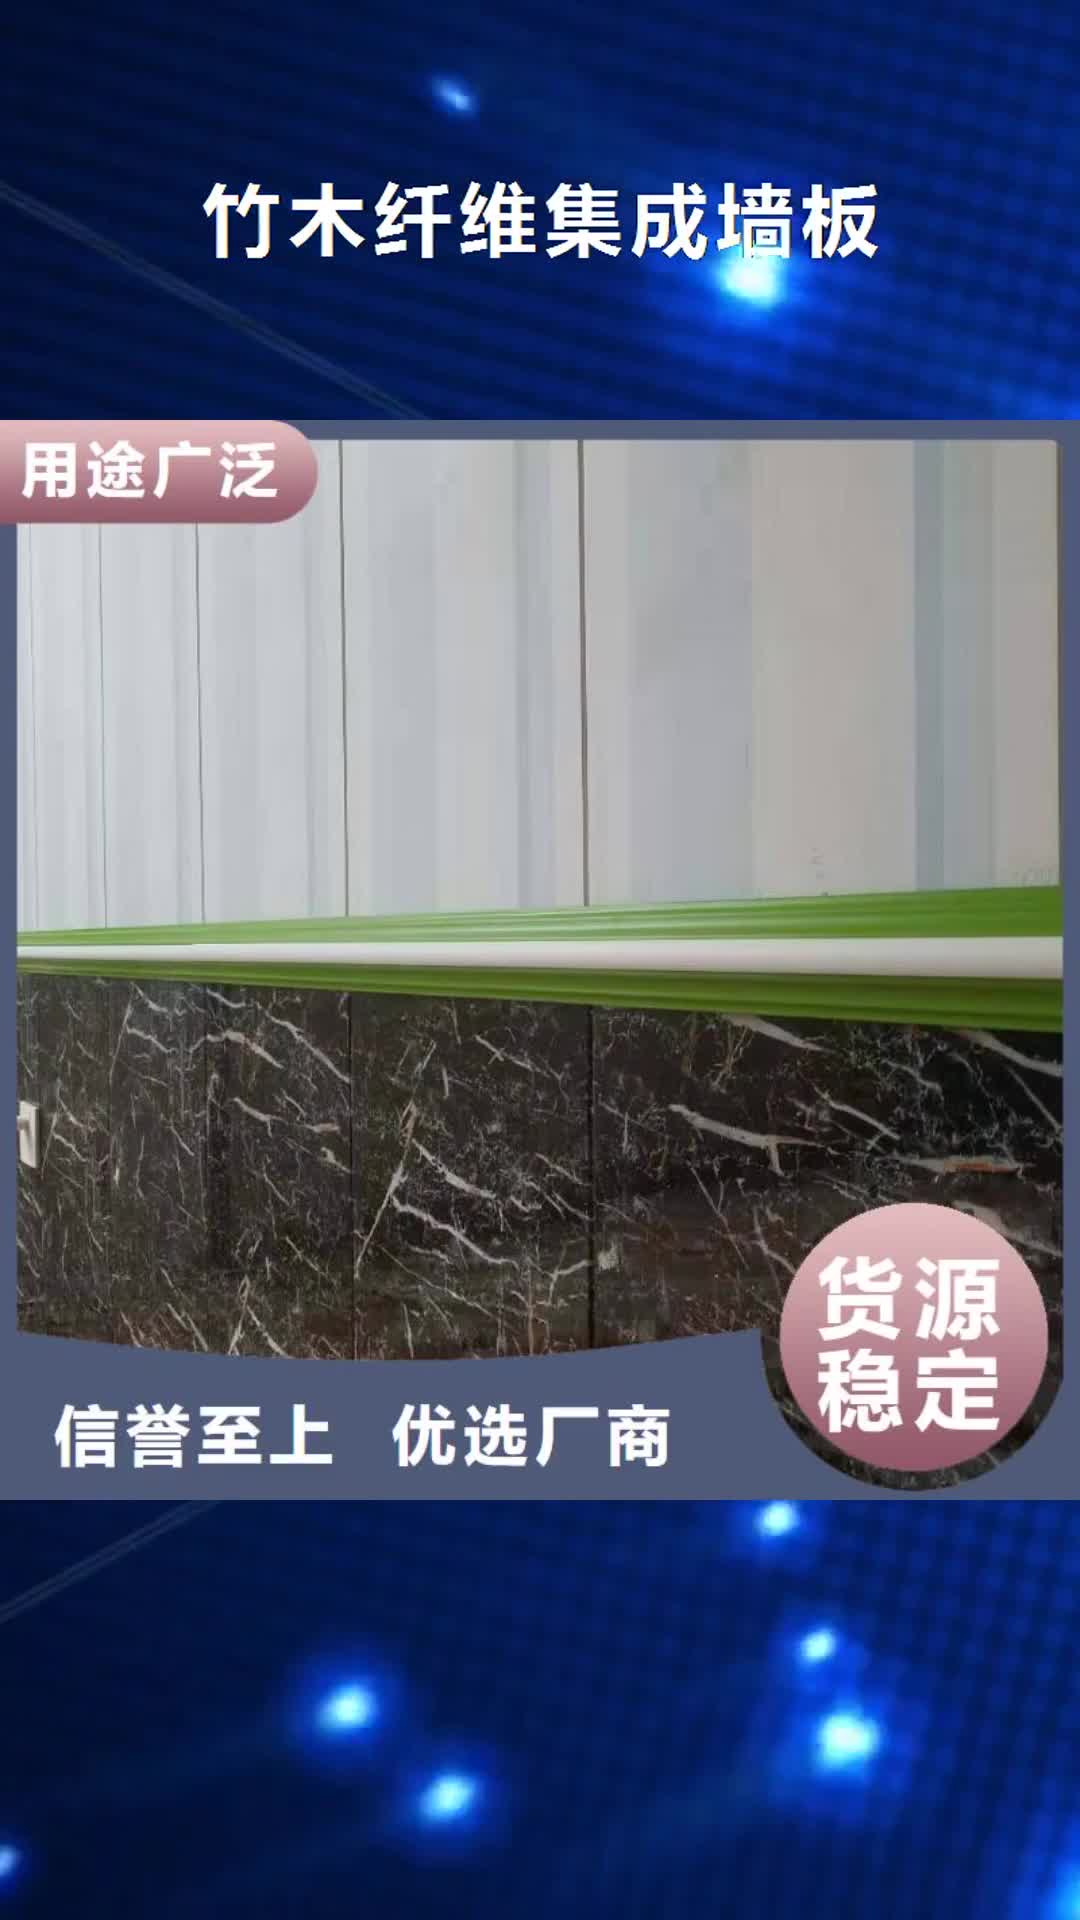 广东 竹木纤维集成墙板海量库存